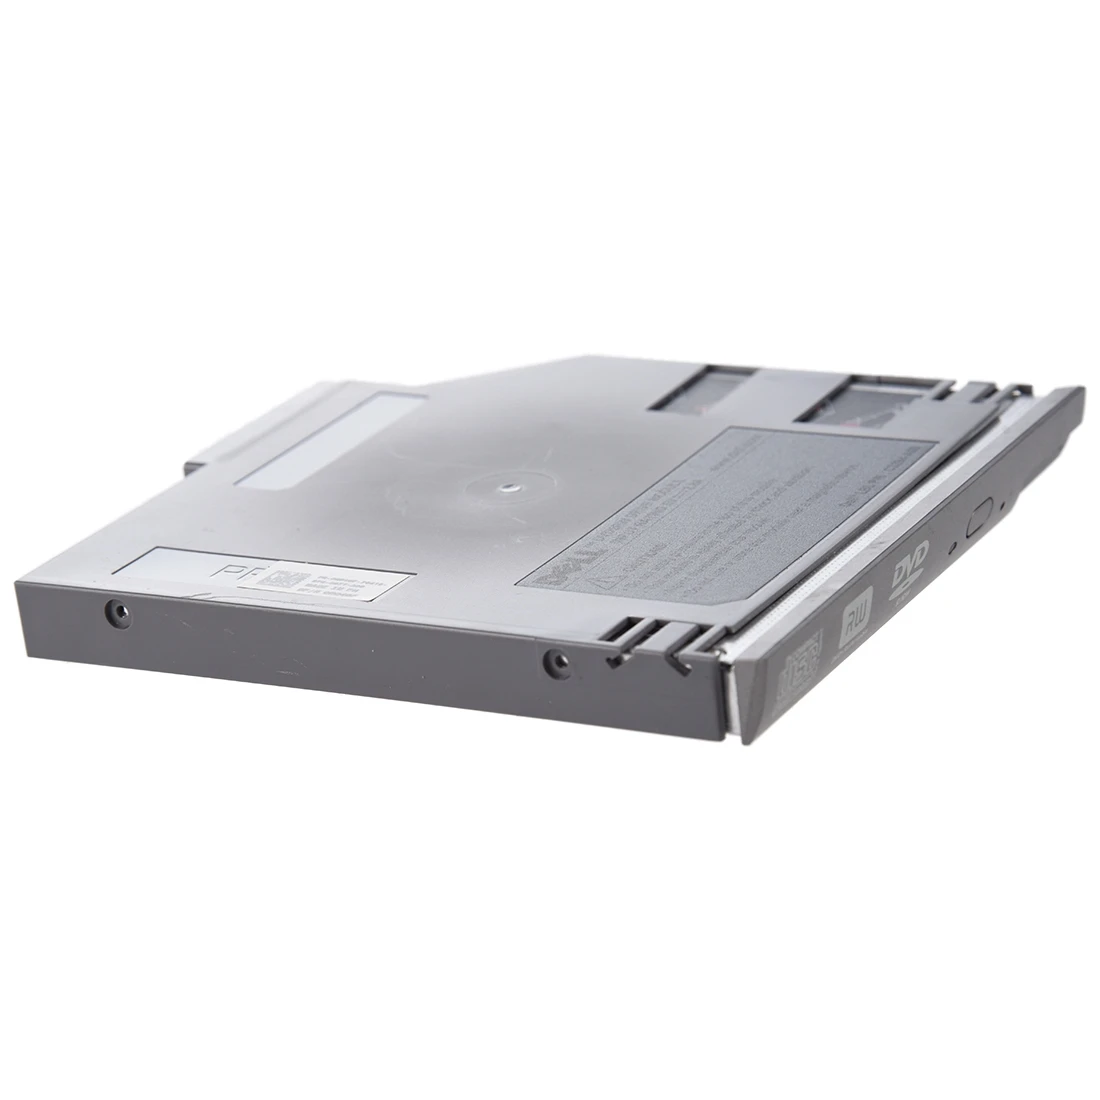 SATA 2-й жесткий диск HDD Защитный Контейнер для устройств считывания и записи информации адаптер для Dell широта D600 D610 D620 D630 серебристый